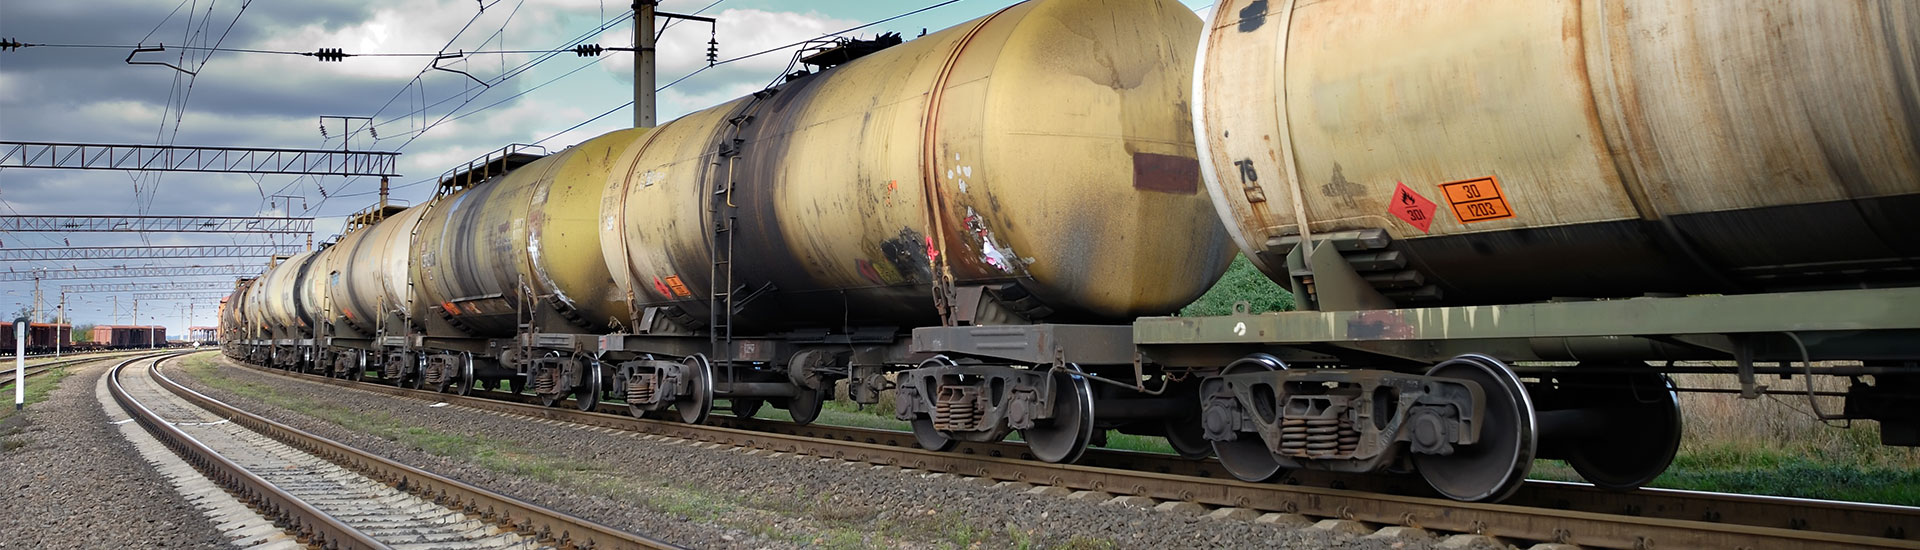 VVA treinvervoer gevaarlijke stoffen